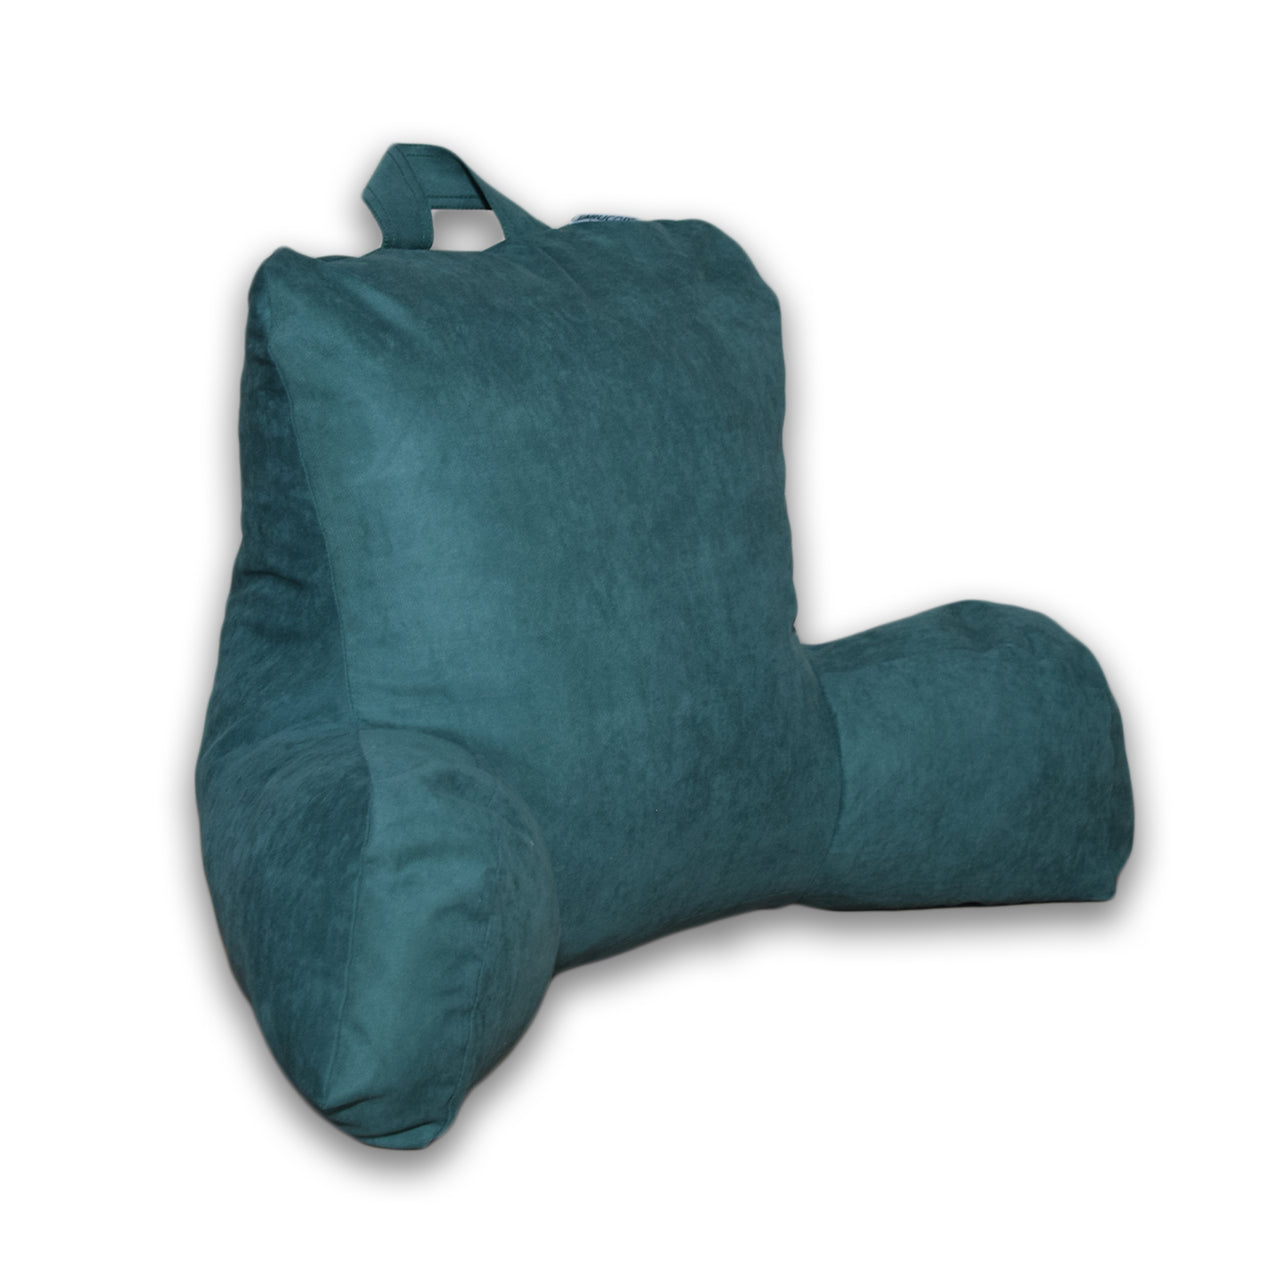 Gối Tựa Lưng Đa Năng Tay Đỡ - Backrest Pillow With Arms